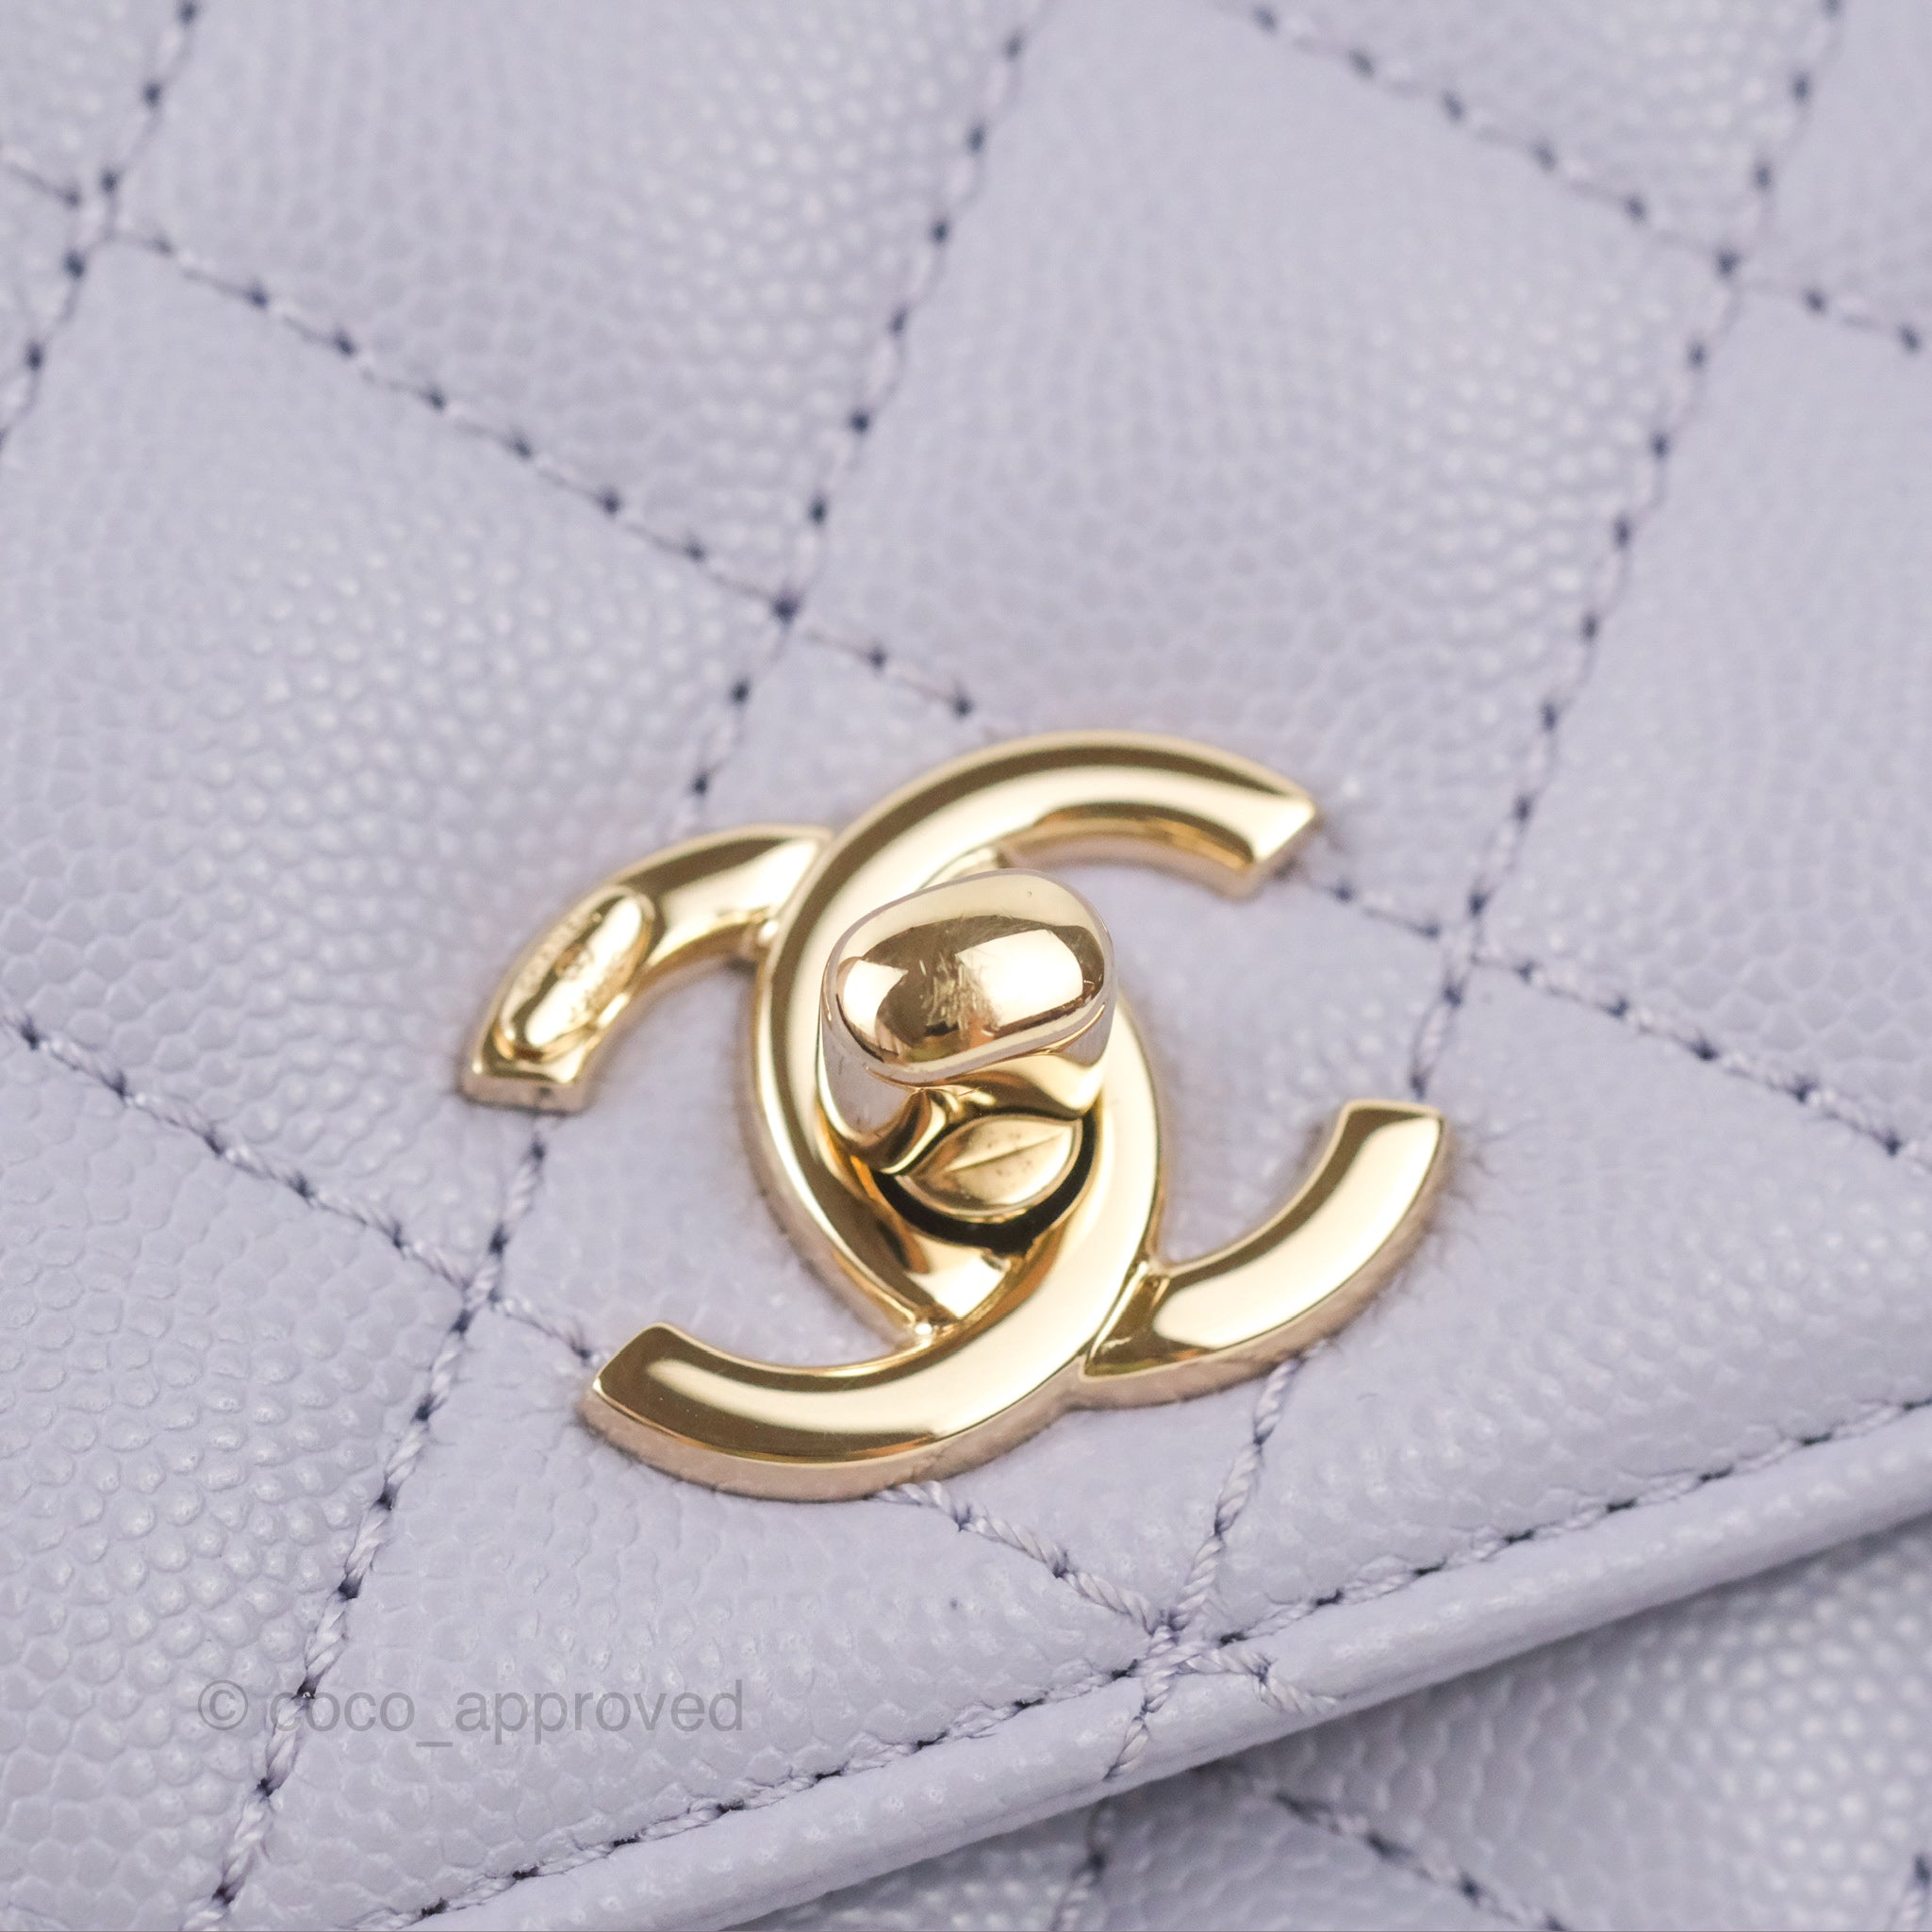 Chanel Small Coco Handle Chevron Purple Lilac Caviar Gold Hardware 21K –  Coco Approved Studio